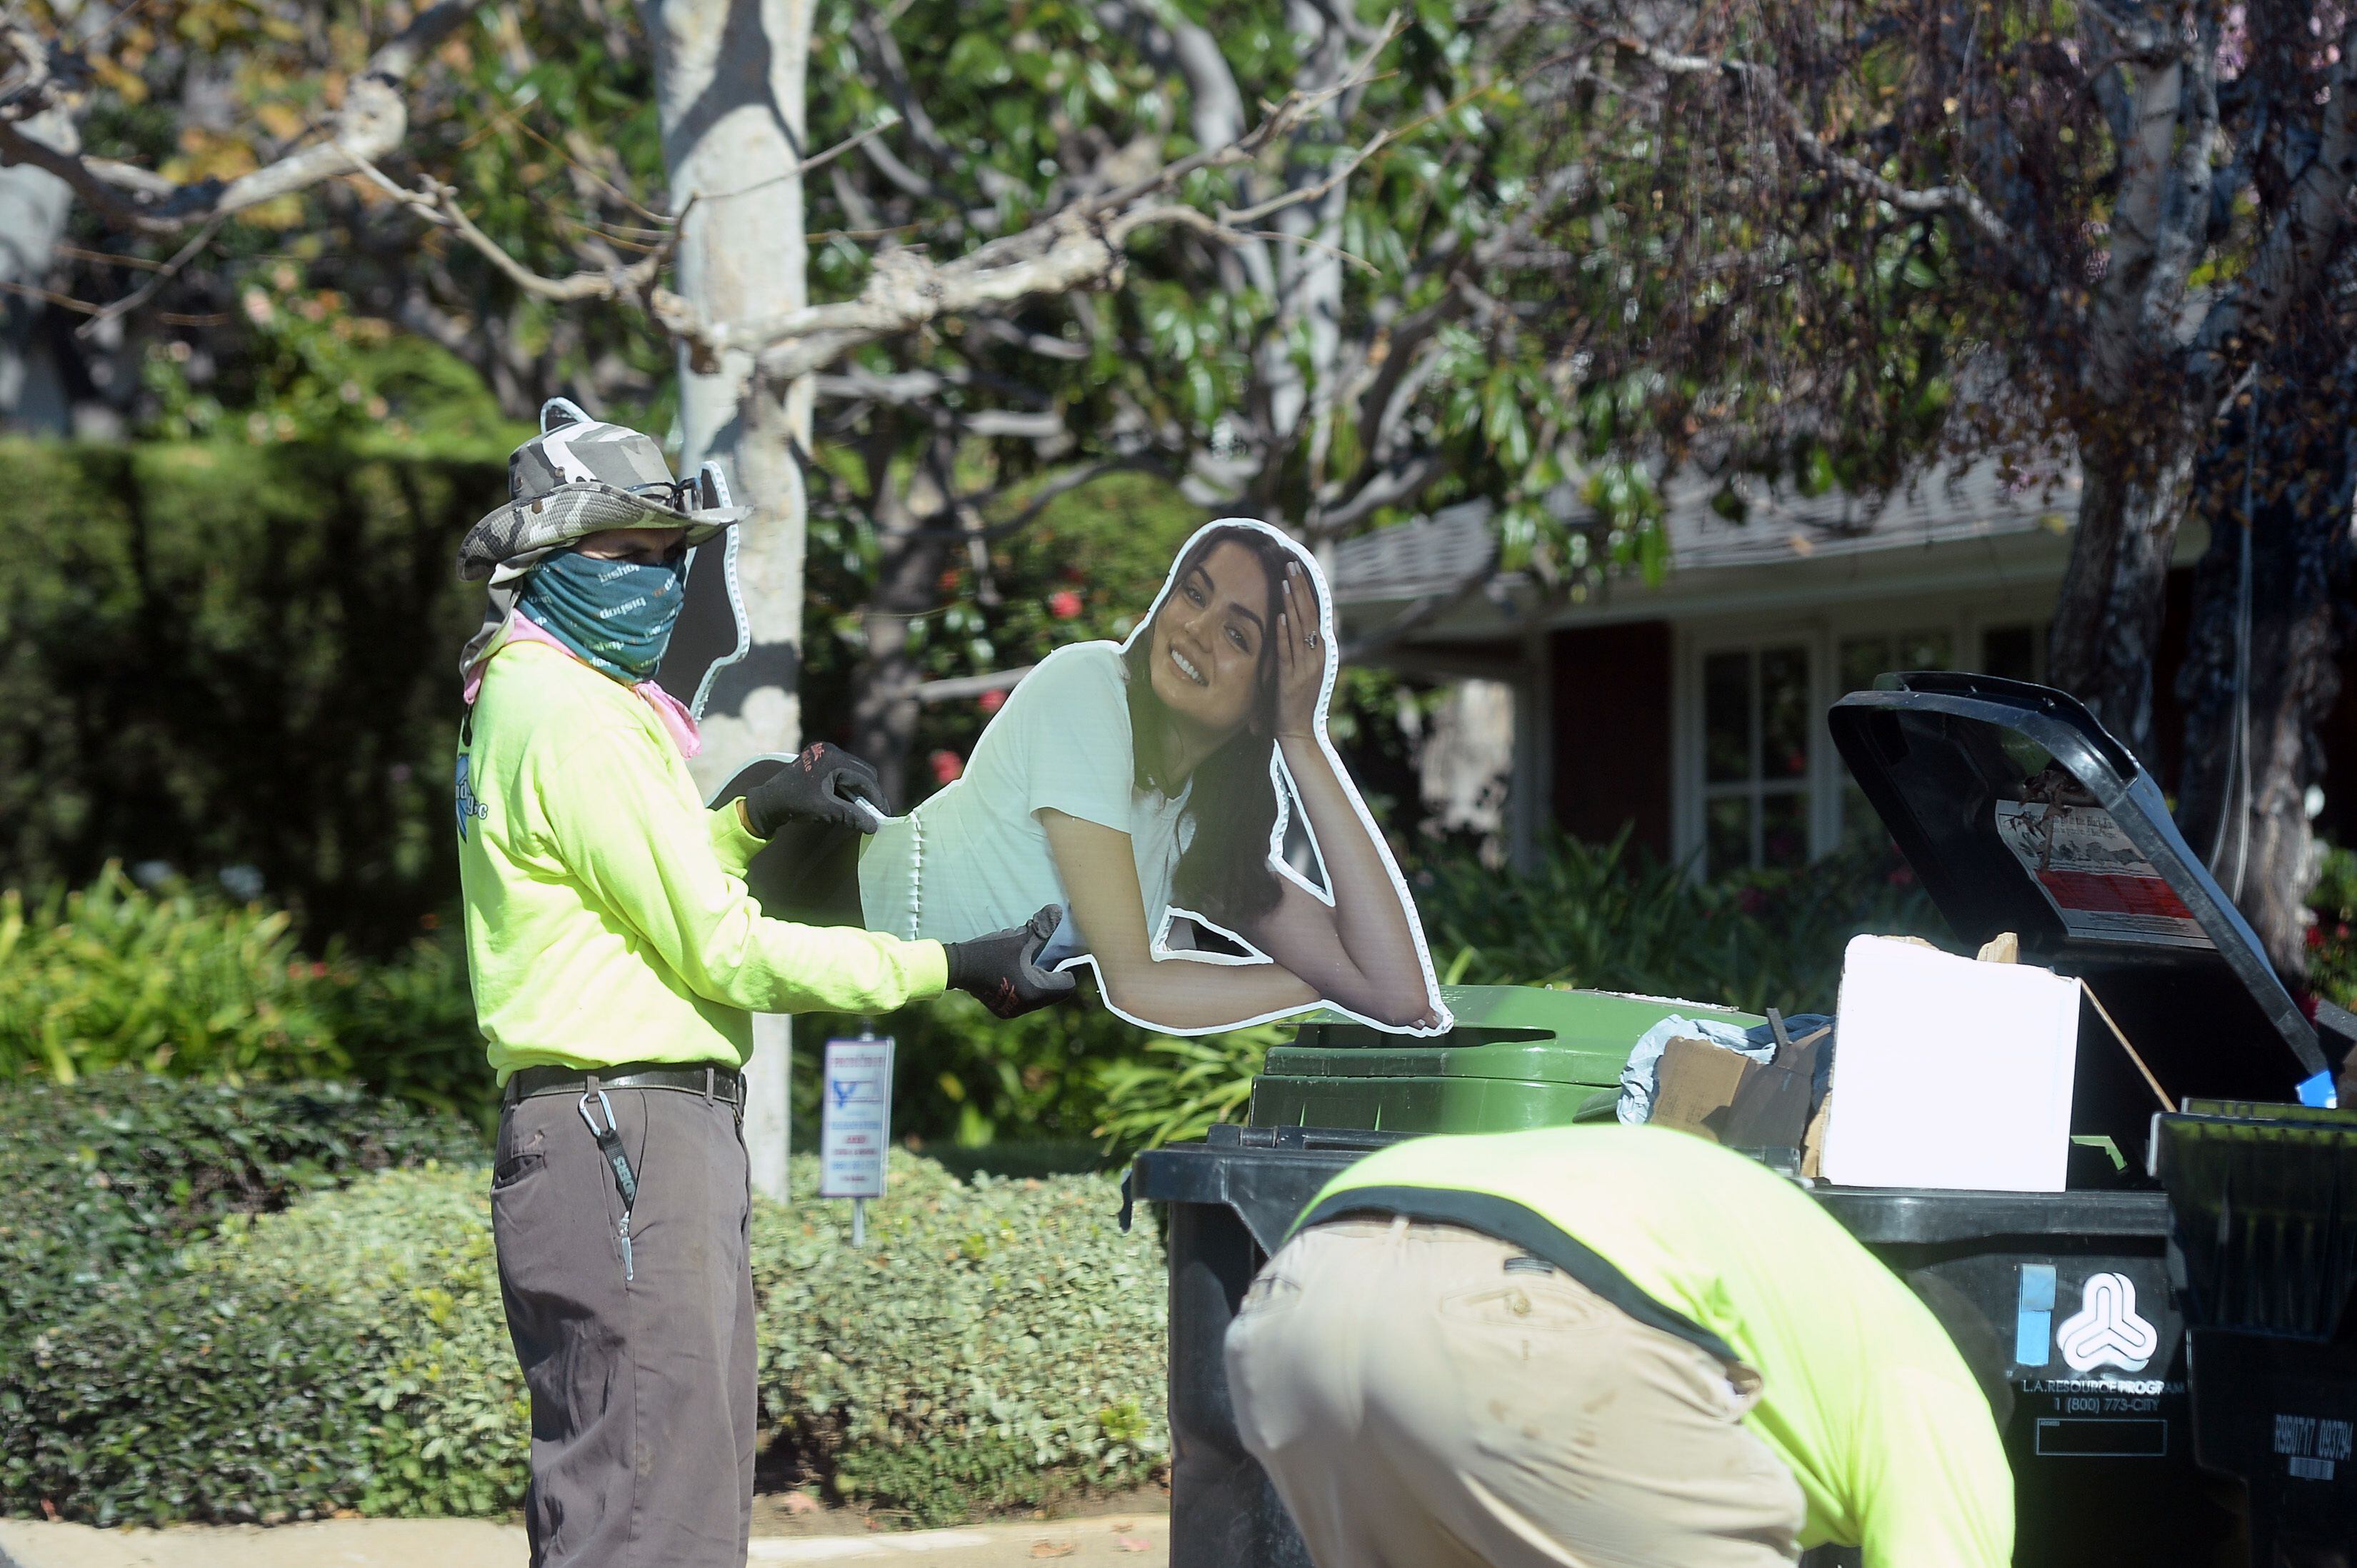 Un miembro del equipo de limpieza deposita un cartel de Ana de Armas en la basura frente a la casa de Ben Affleck, en Los Ángeles el pasado lunes.